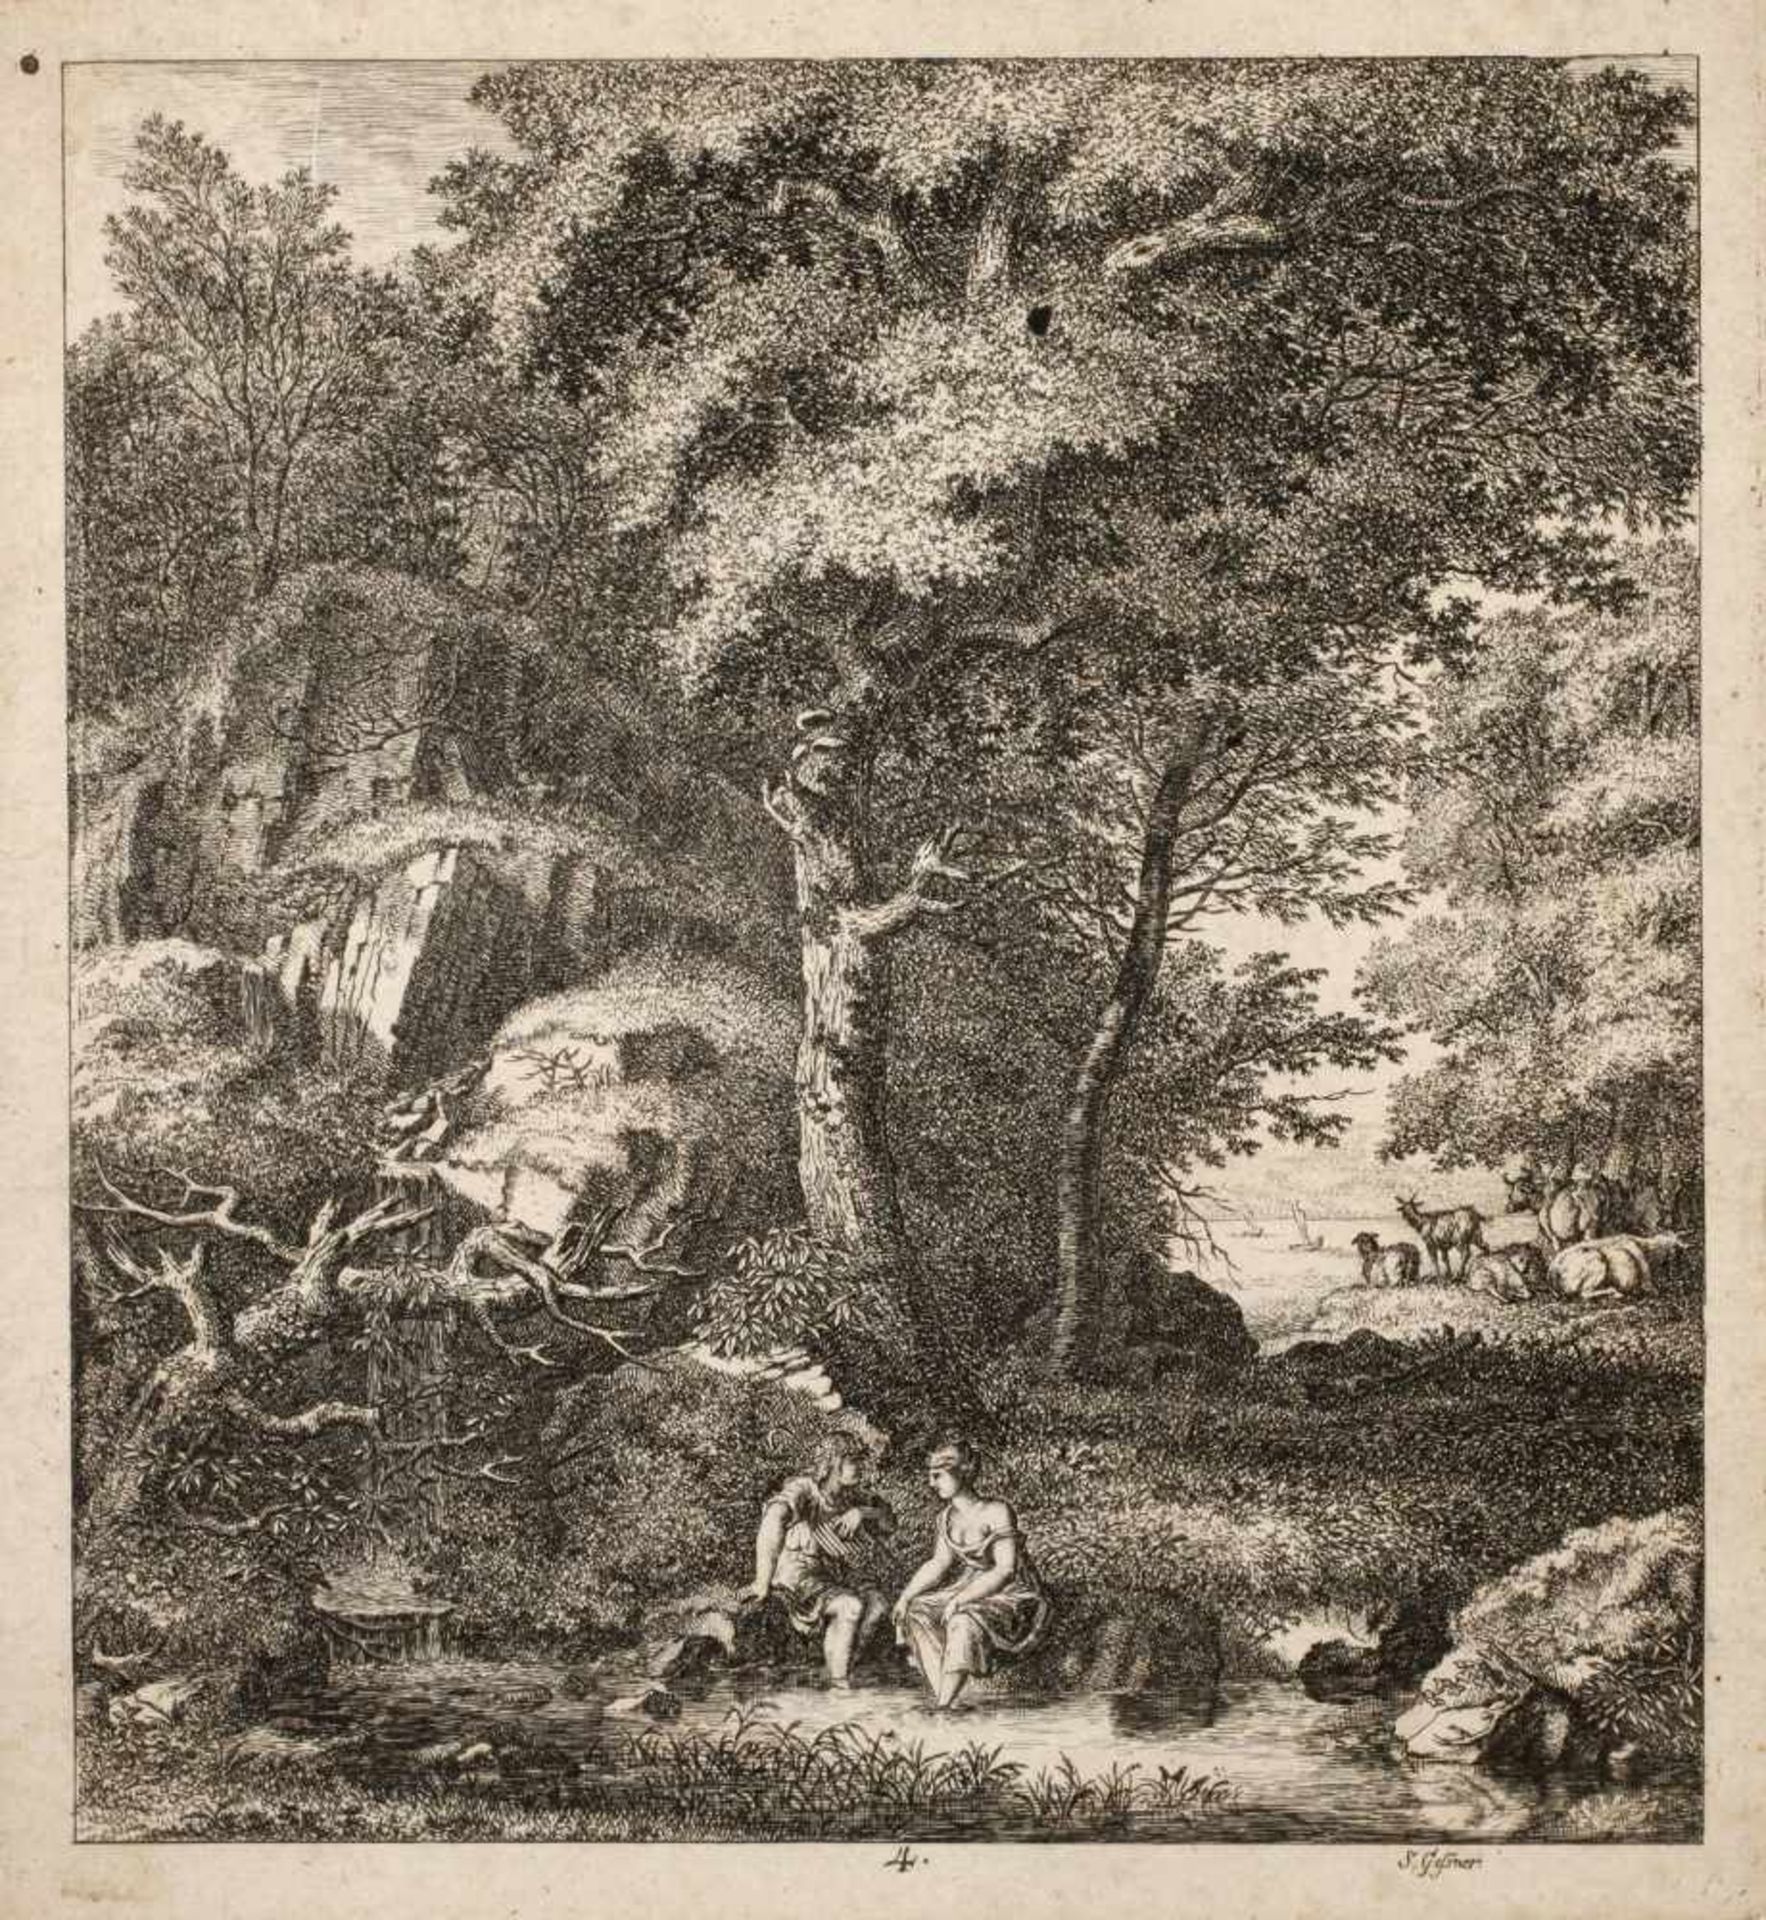 Salomon Gessner, Bukolische LandschaftIdyll mit Hirtenpaar vor felsiger Kulisse am Bach, die Füße im